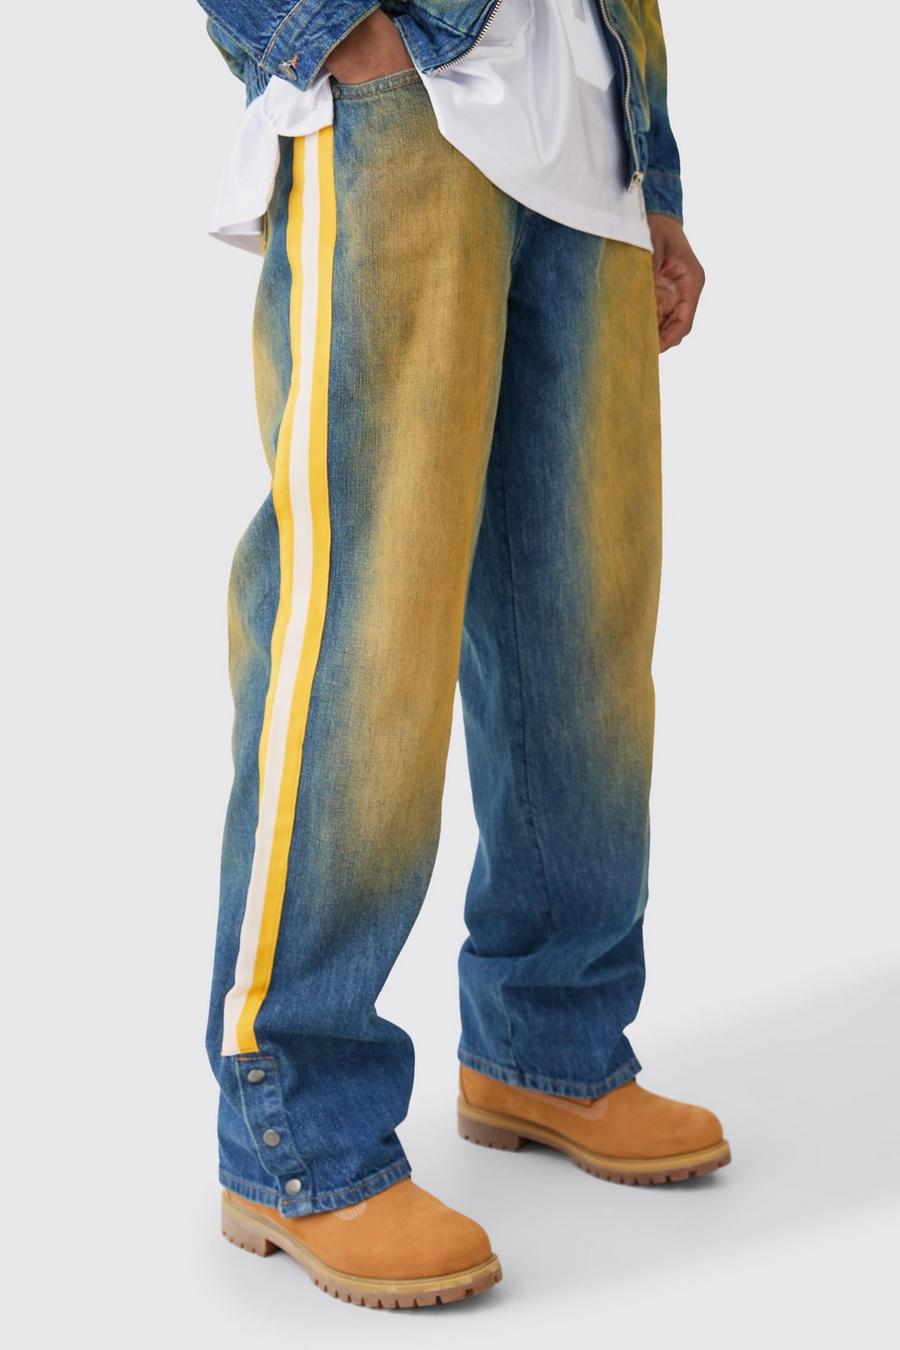 Jeans Nfl Chiefs extra comodi in denim rigido colorato con bottoni a pressione e striscia sul fondo, Antique blue